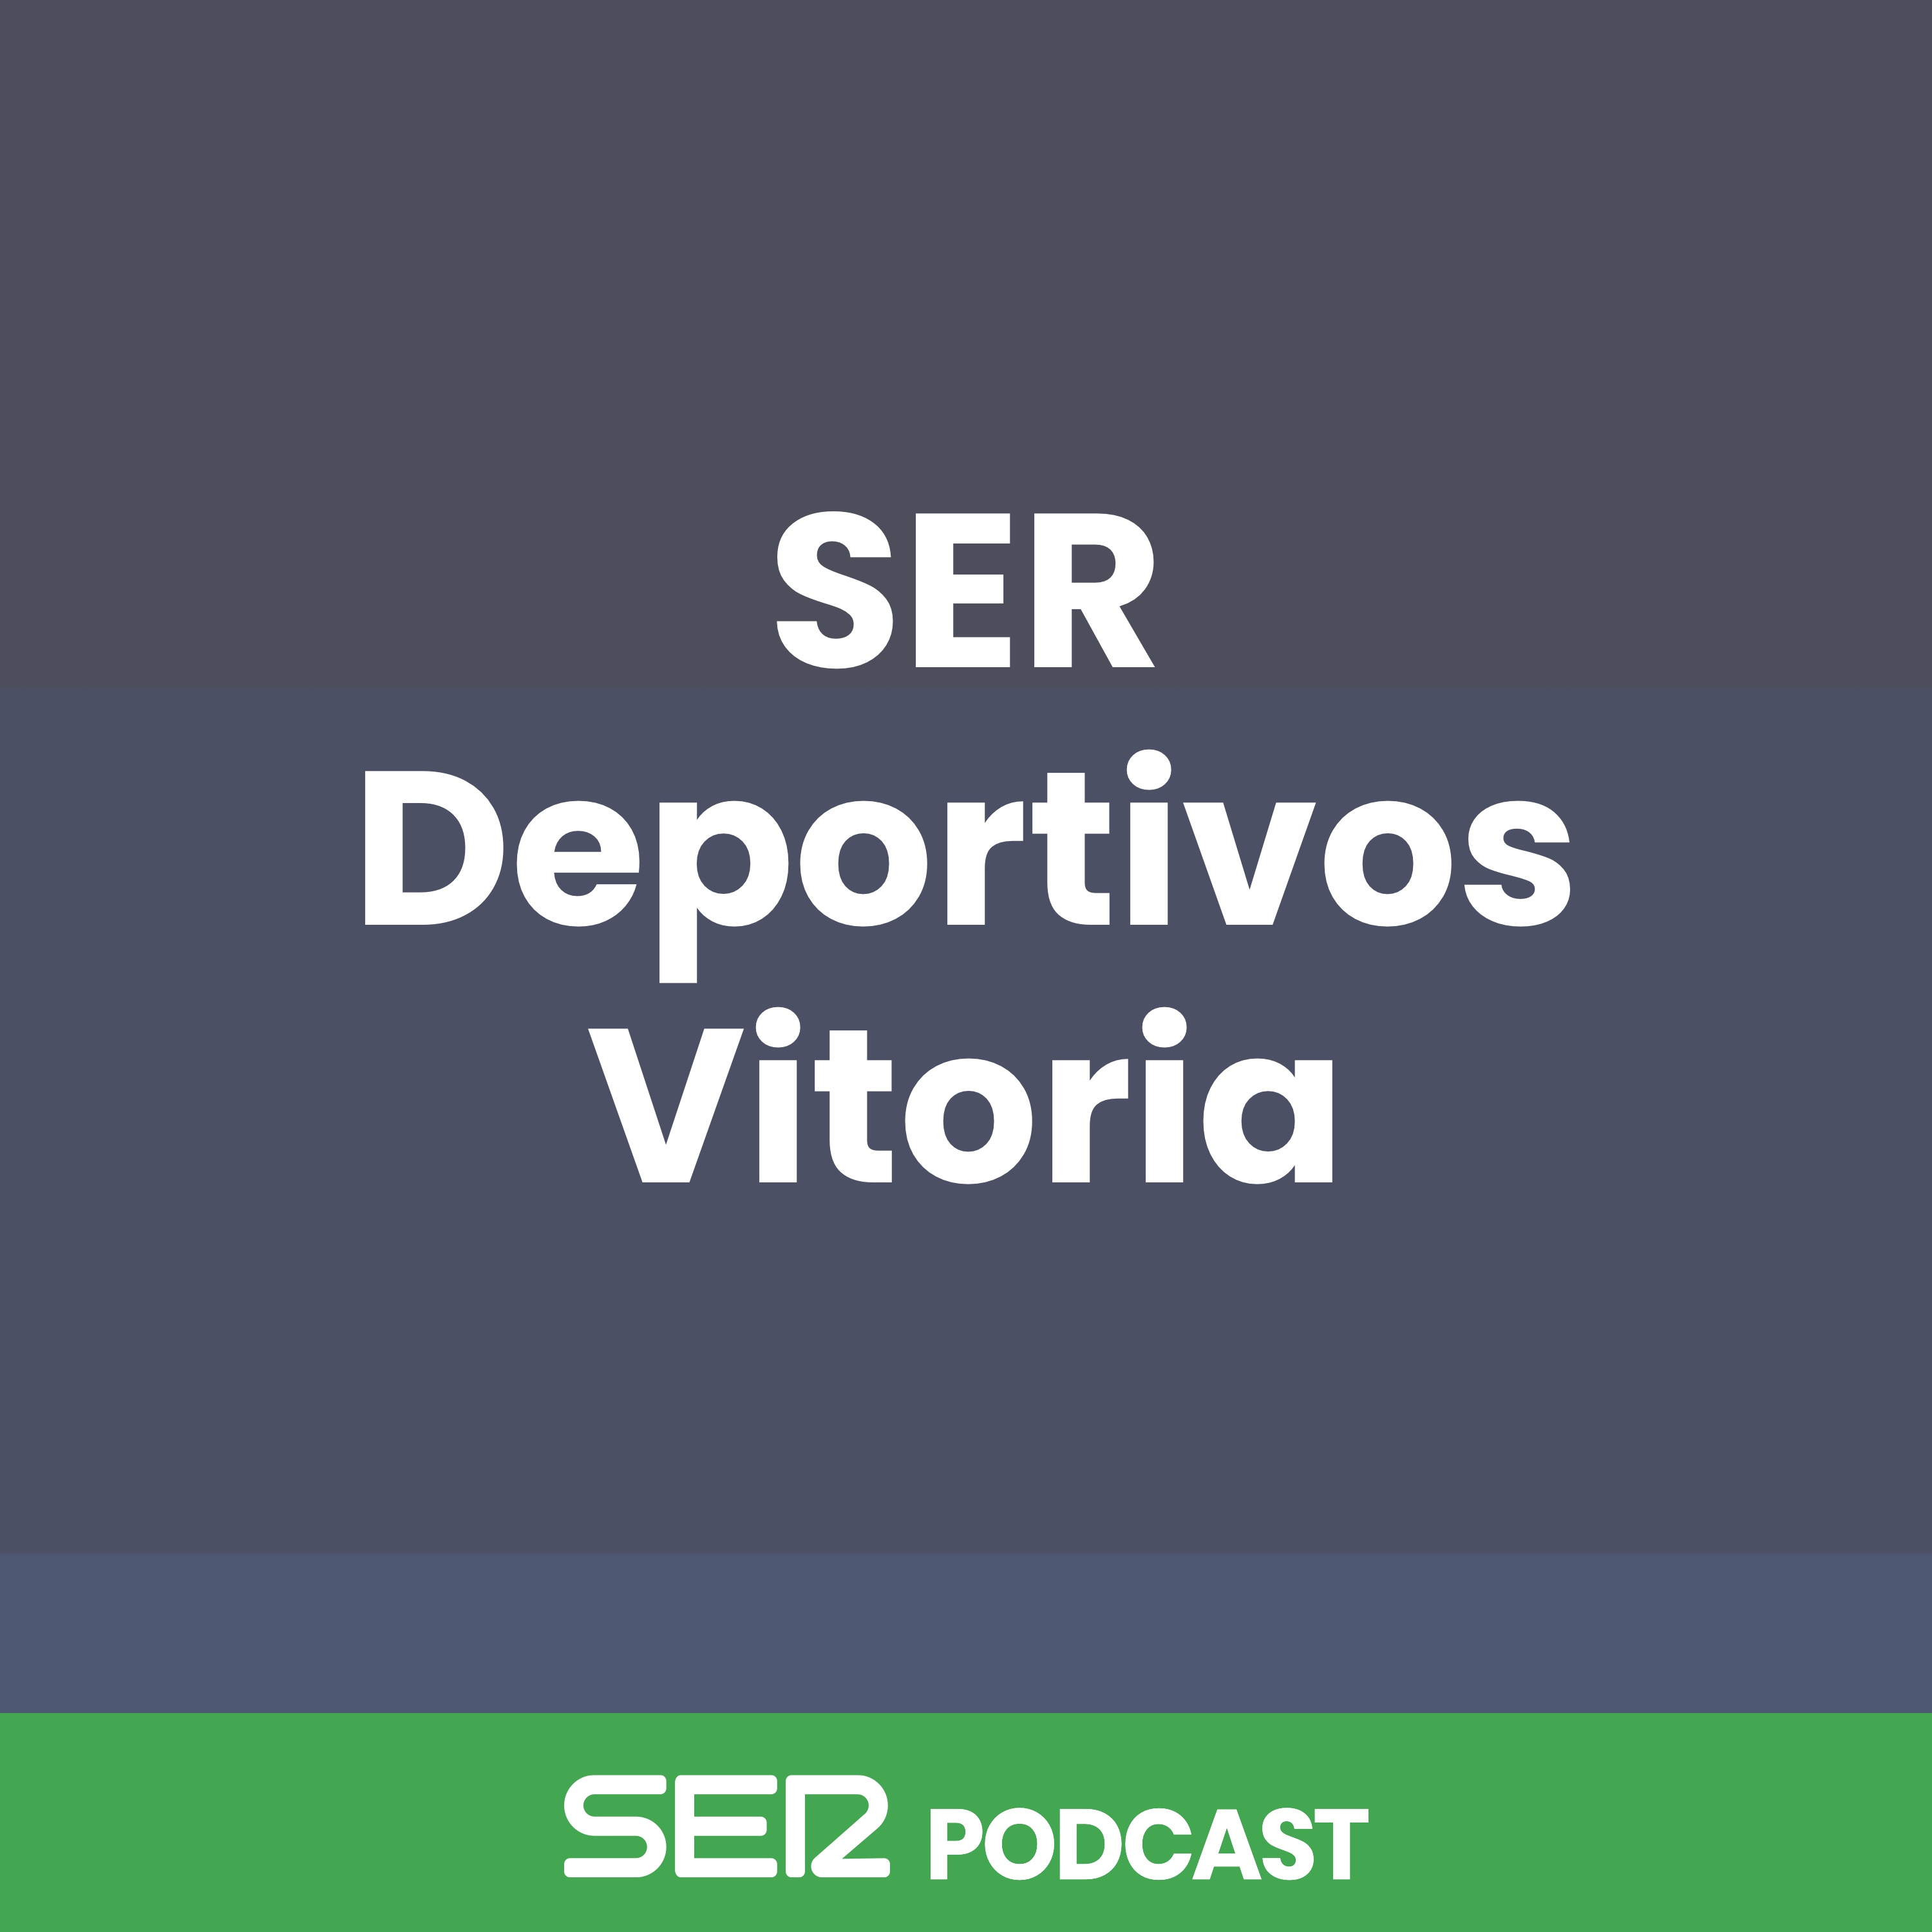 SER Deportivos Vitoria